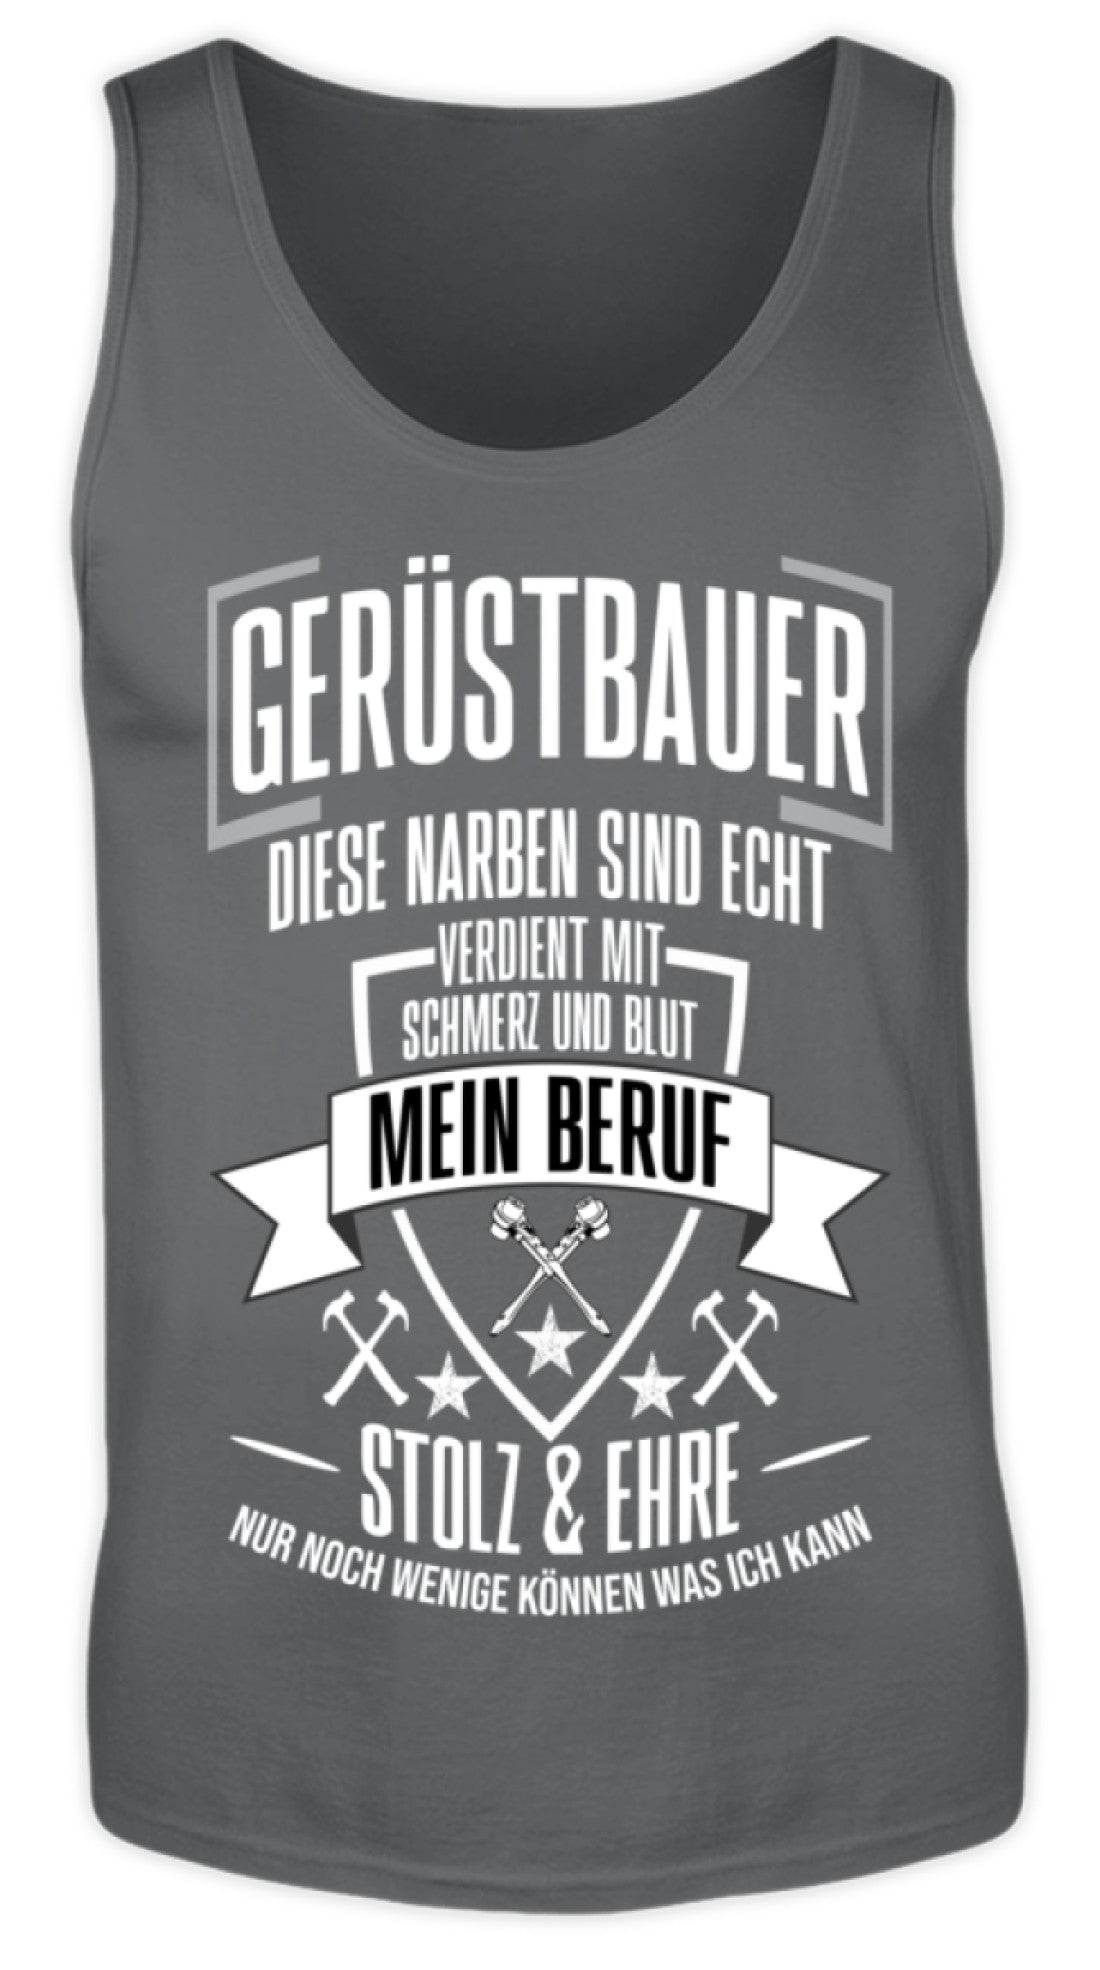 Gerüstbauer / MEIN BERUF  - Herren Tanktop €19.95 Gerüstbauer - Shop >>